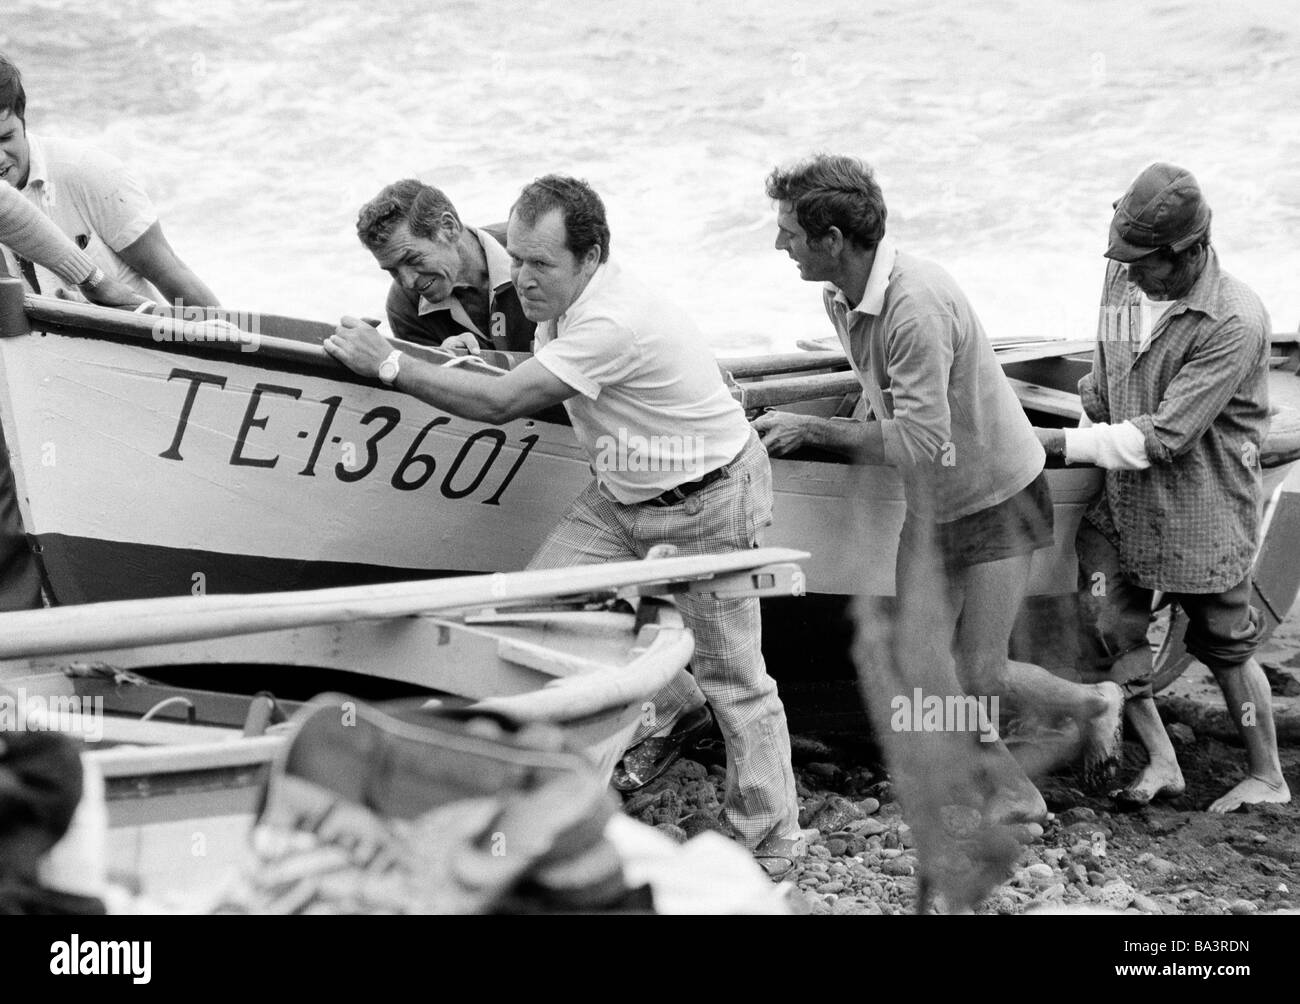 Années 1980, photo en noir et blanc, plusieurs pêcheurs dans le port de pêche de Puerto de la Cruz tirer sur un bateau de pêche à terre, de 40 à 60 ans, l'Espagne, Îles Canaries, Tenerife Banque D'Images